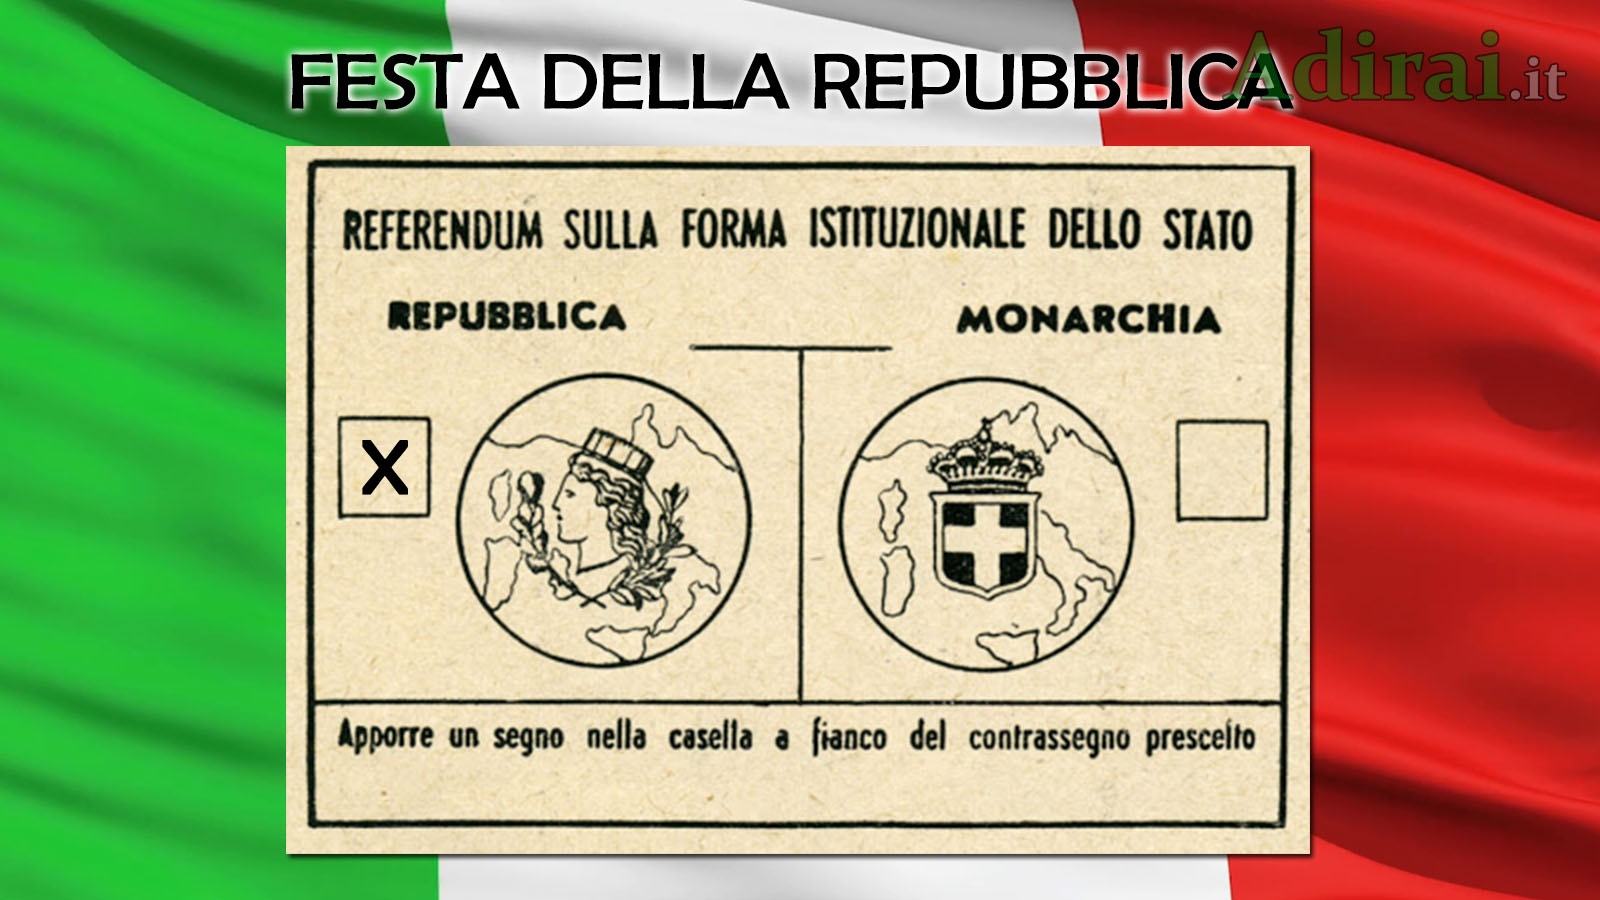 festa della repubblica italiana 2 giugno 1946 referendum italia